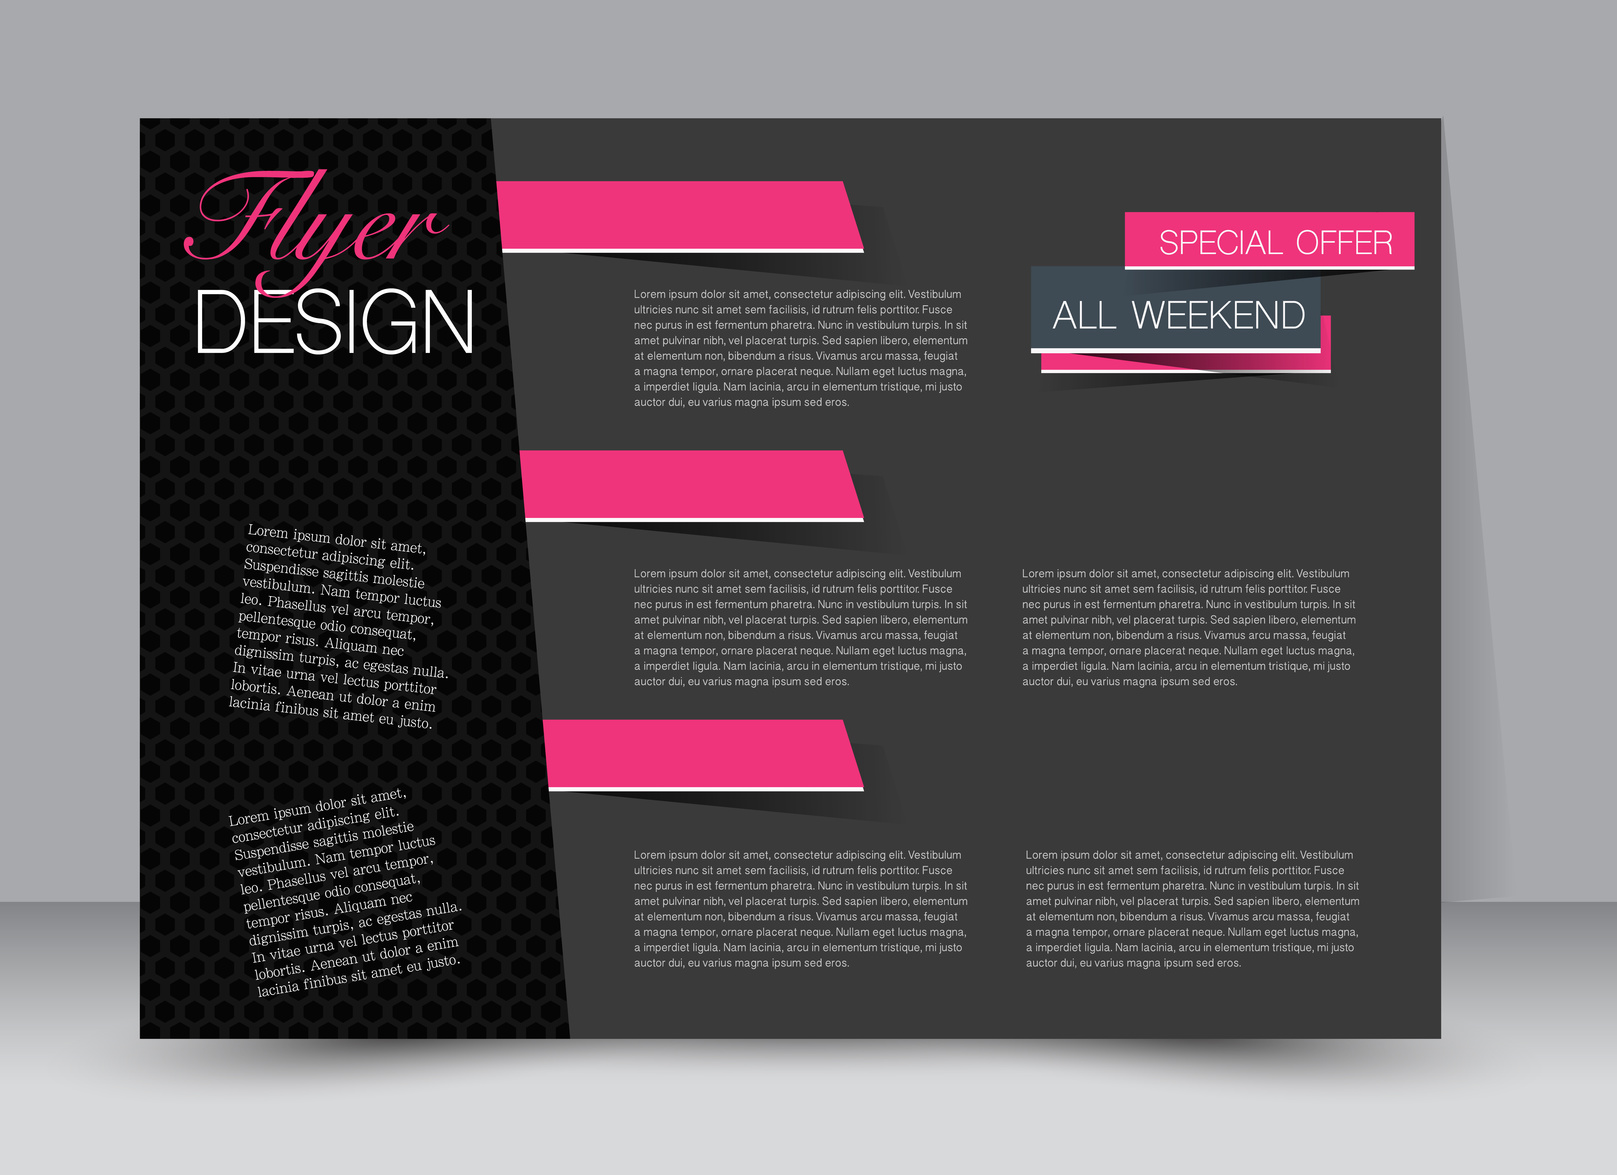 Flyer, brochure, billboard template design landscape orientation for education, presentation, website. Pink and black color. Editable vector illustration.